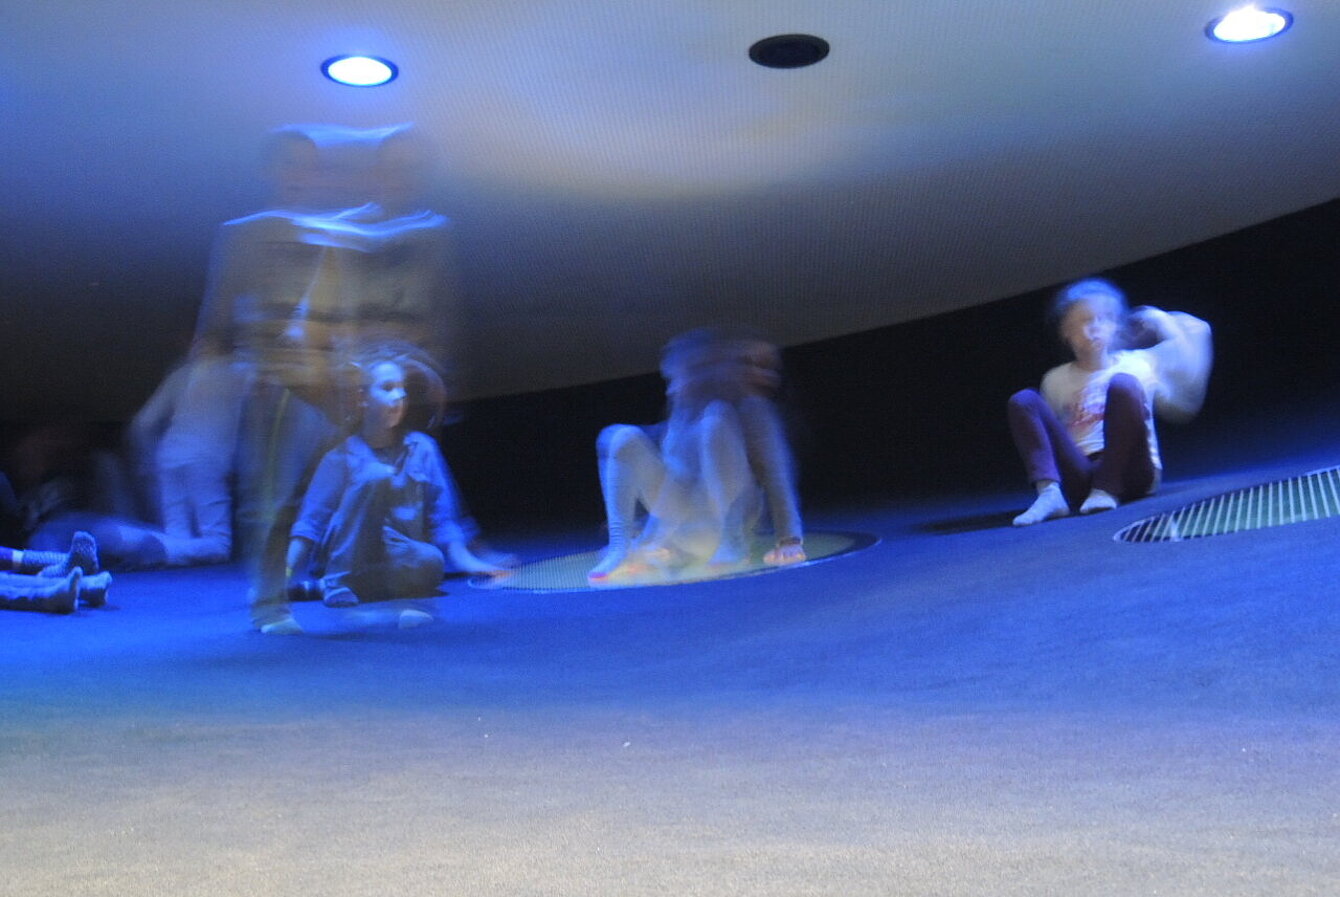 mehrere Kinder in einem dunklen Raum im Kunsthaus